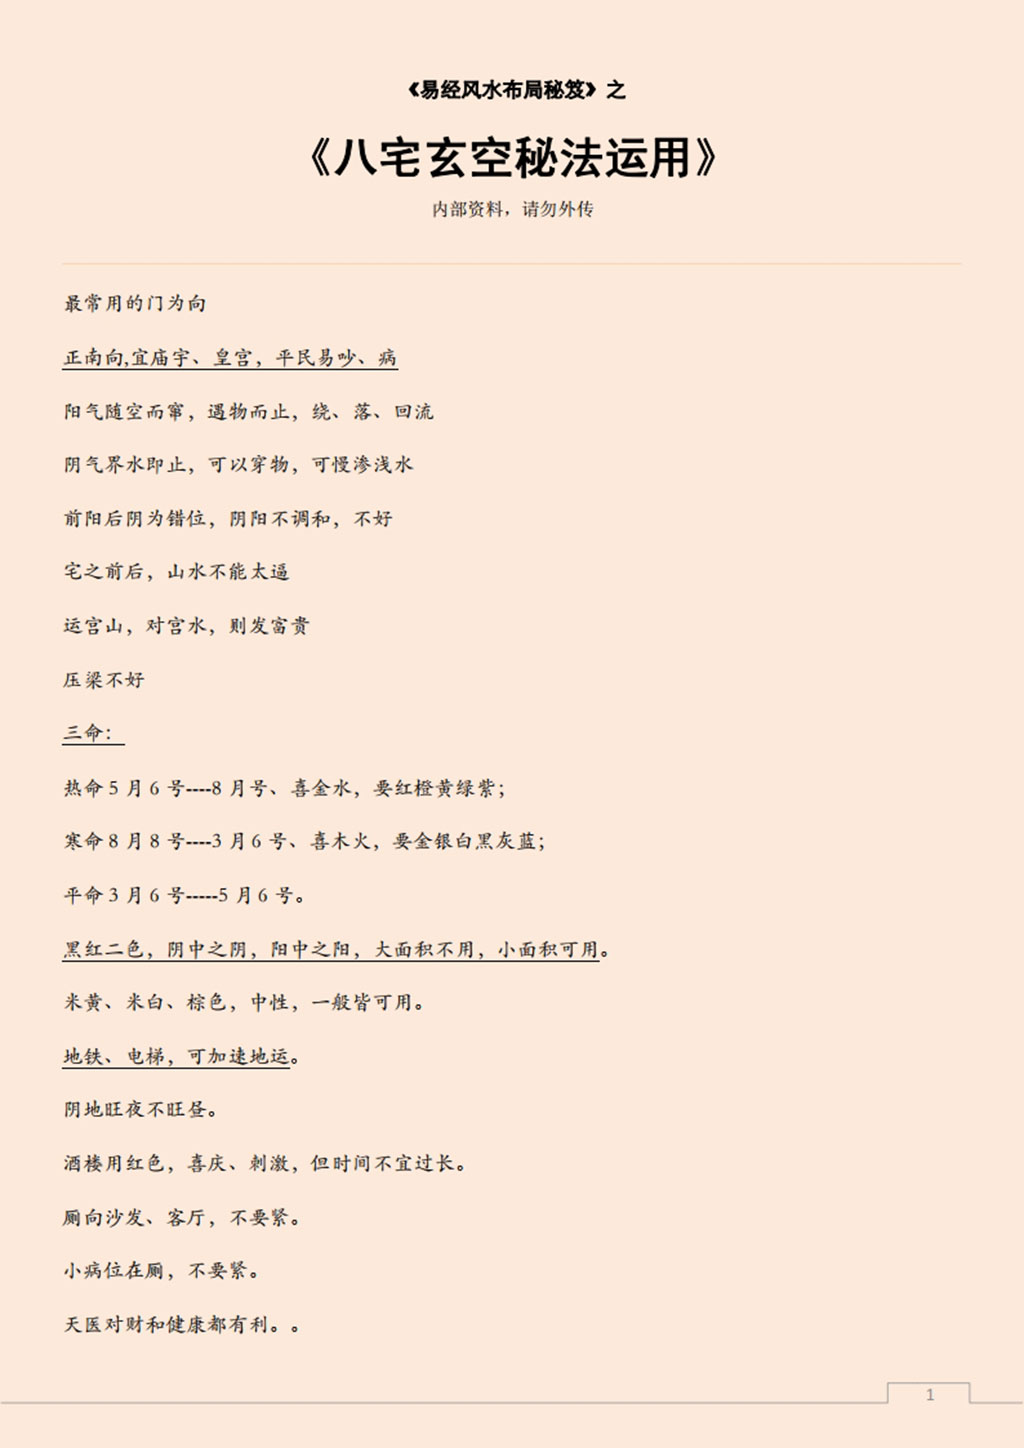 易经风水布局秘笈之《八宅玄空秘法运用》.pdf